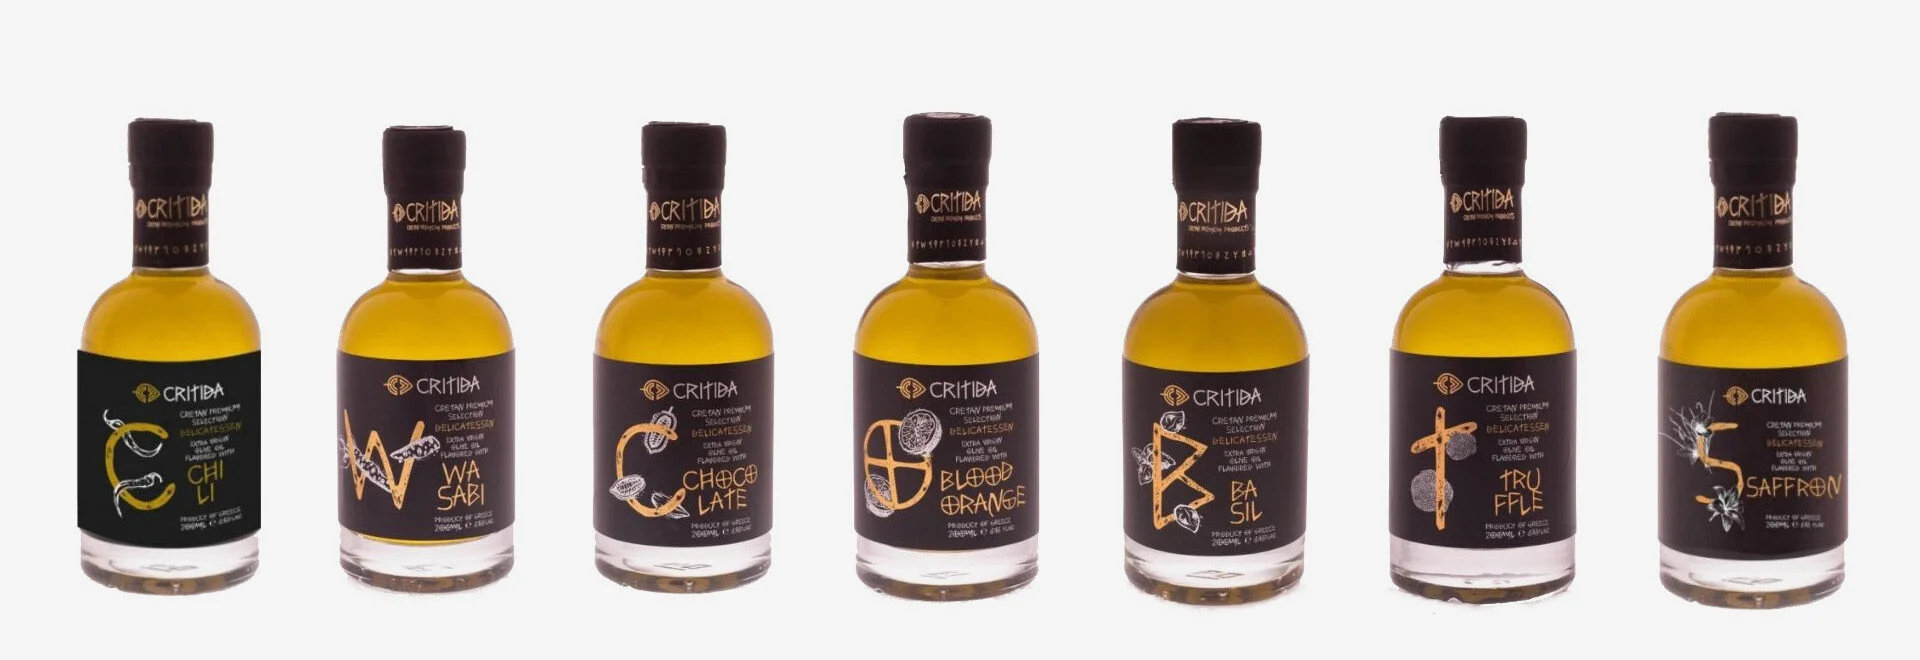 Våra smaksatta Extra Virgin Olive Oil (EVOO) premiumprodukter från ön Kreta Grekland